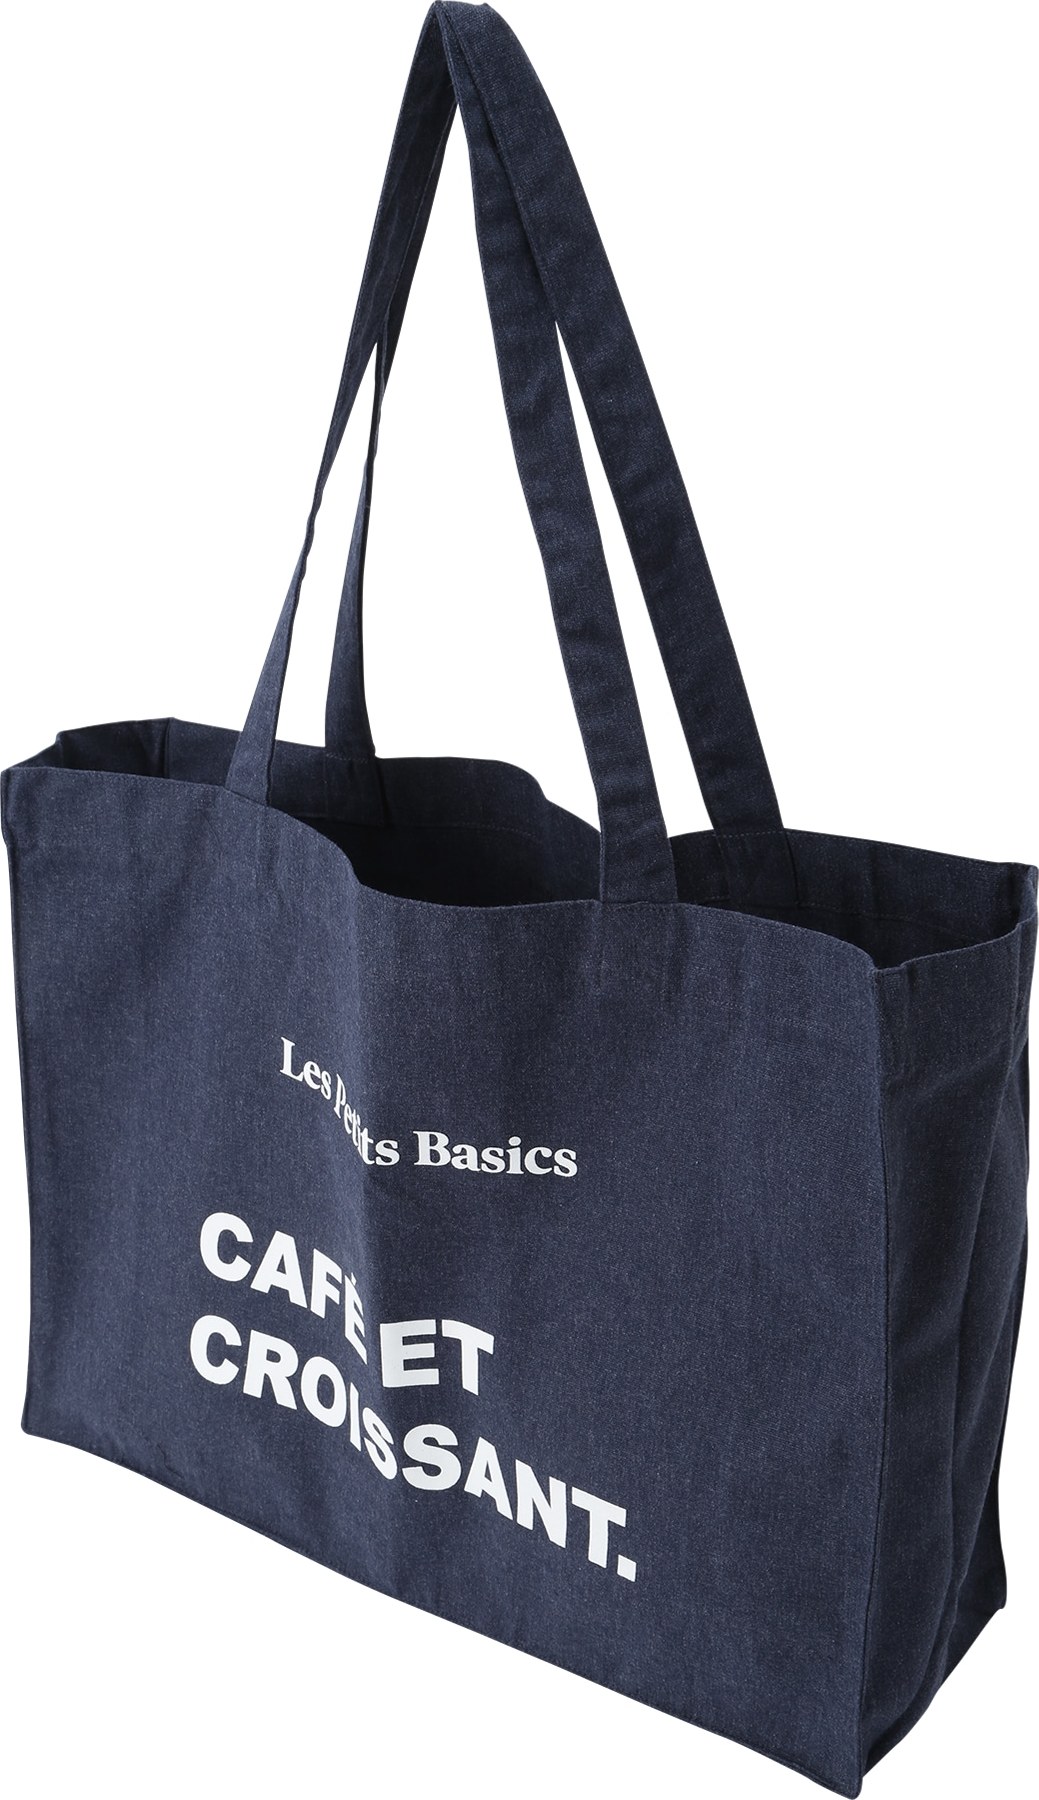 Les Petits Basics Nákupní taška bílá / tmavě modrá